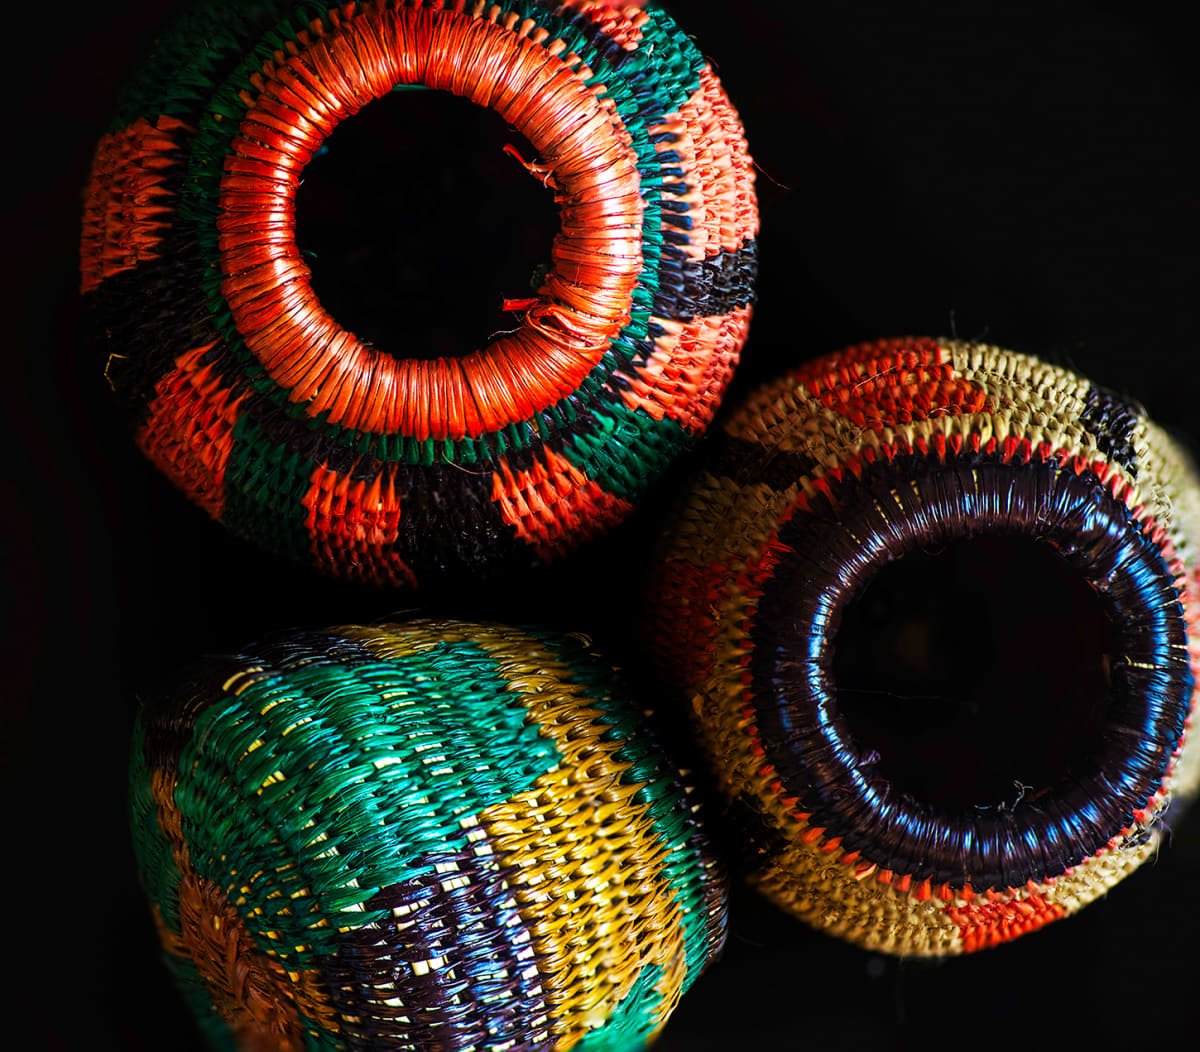 Baskets of Joy by Cynthia Slade 